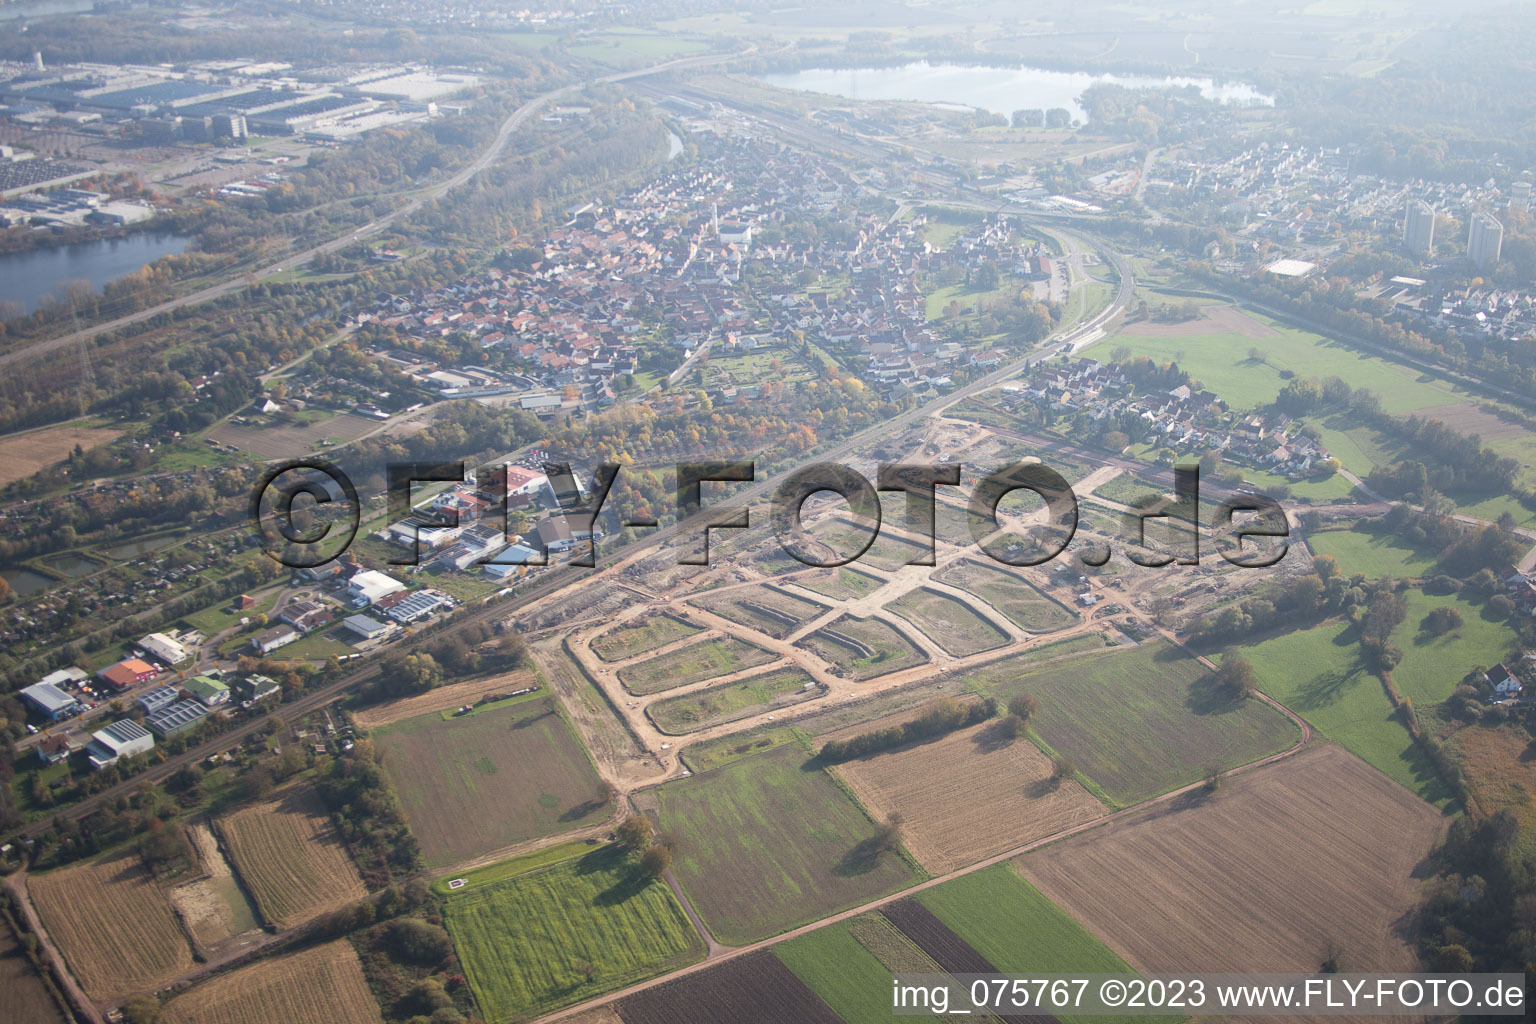 Aerial view of Niederwiesen new development area in Wörth am Rhein in the state Rhineland-Palatinate, Germany